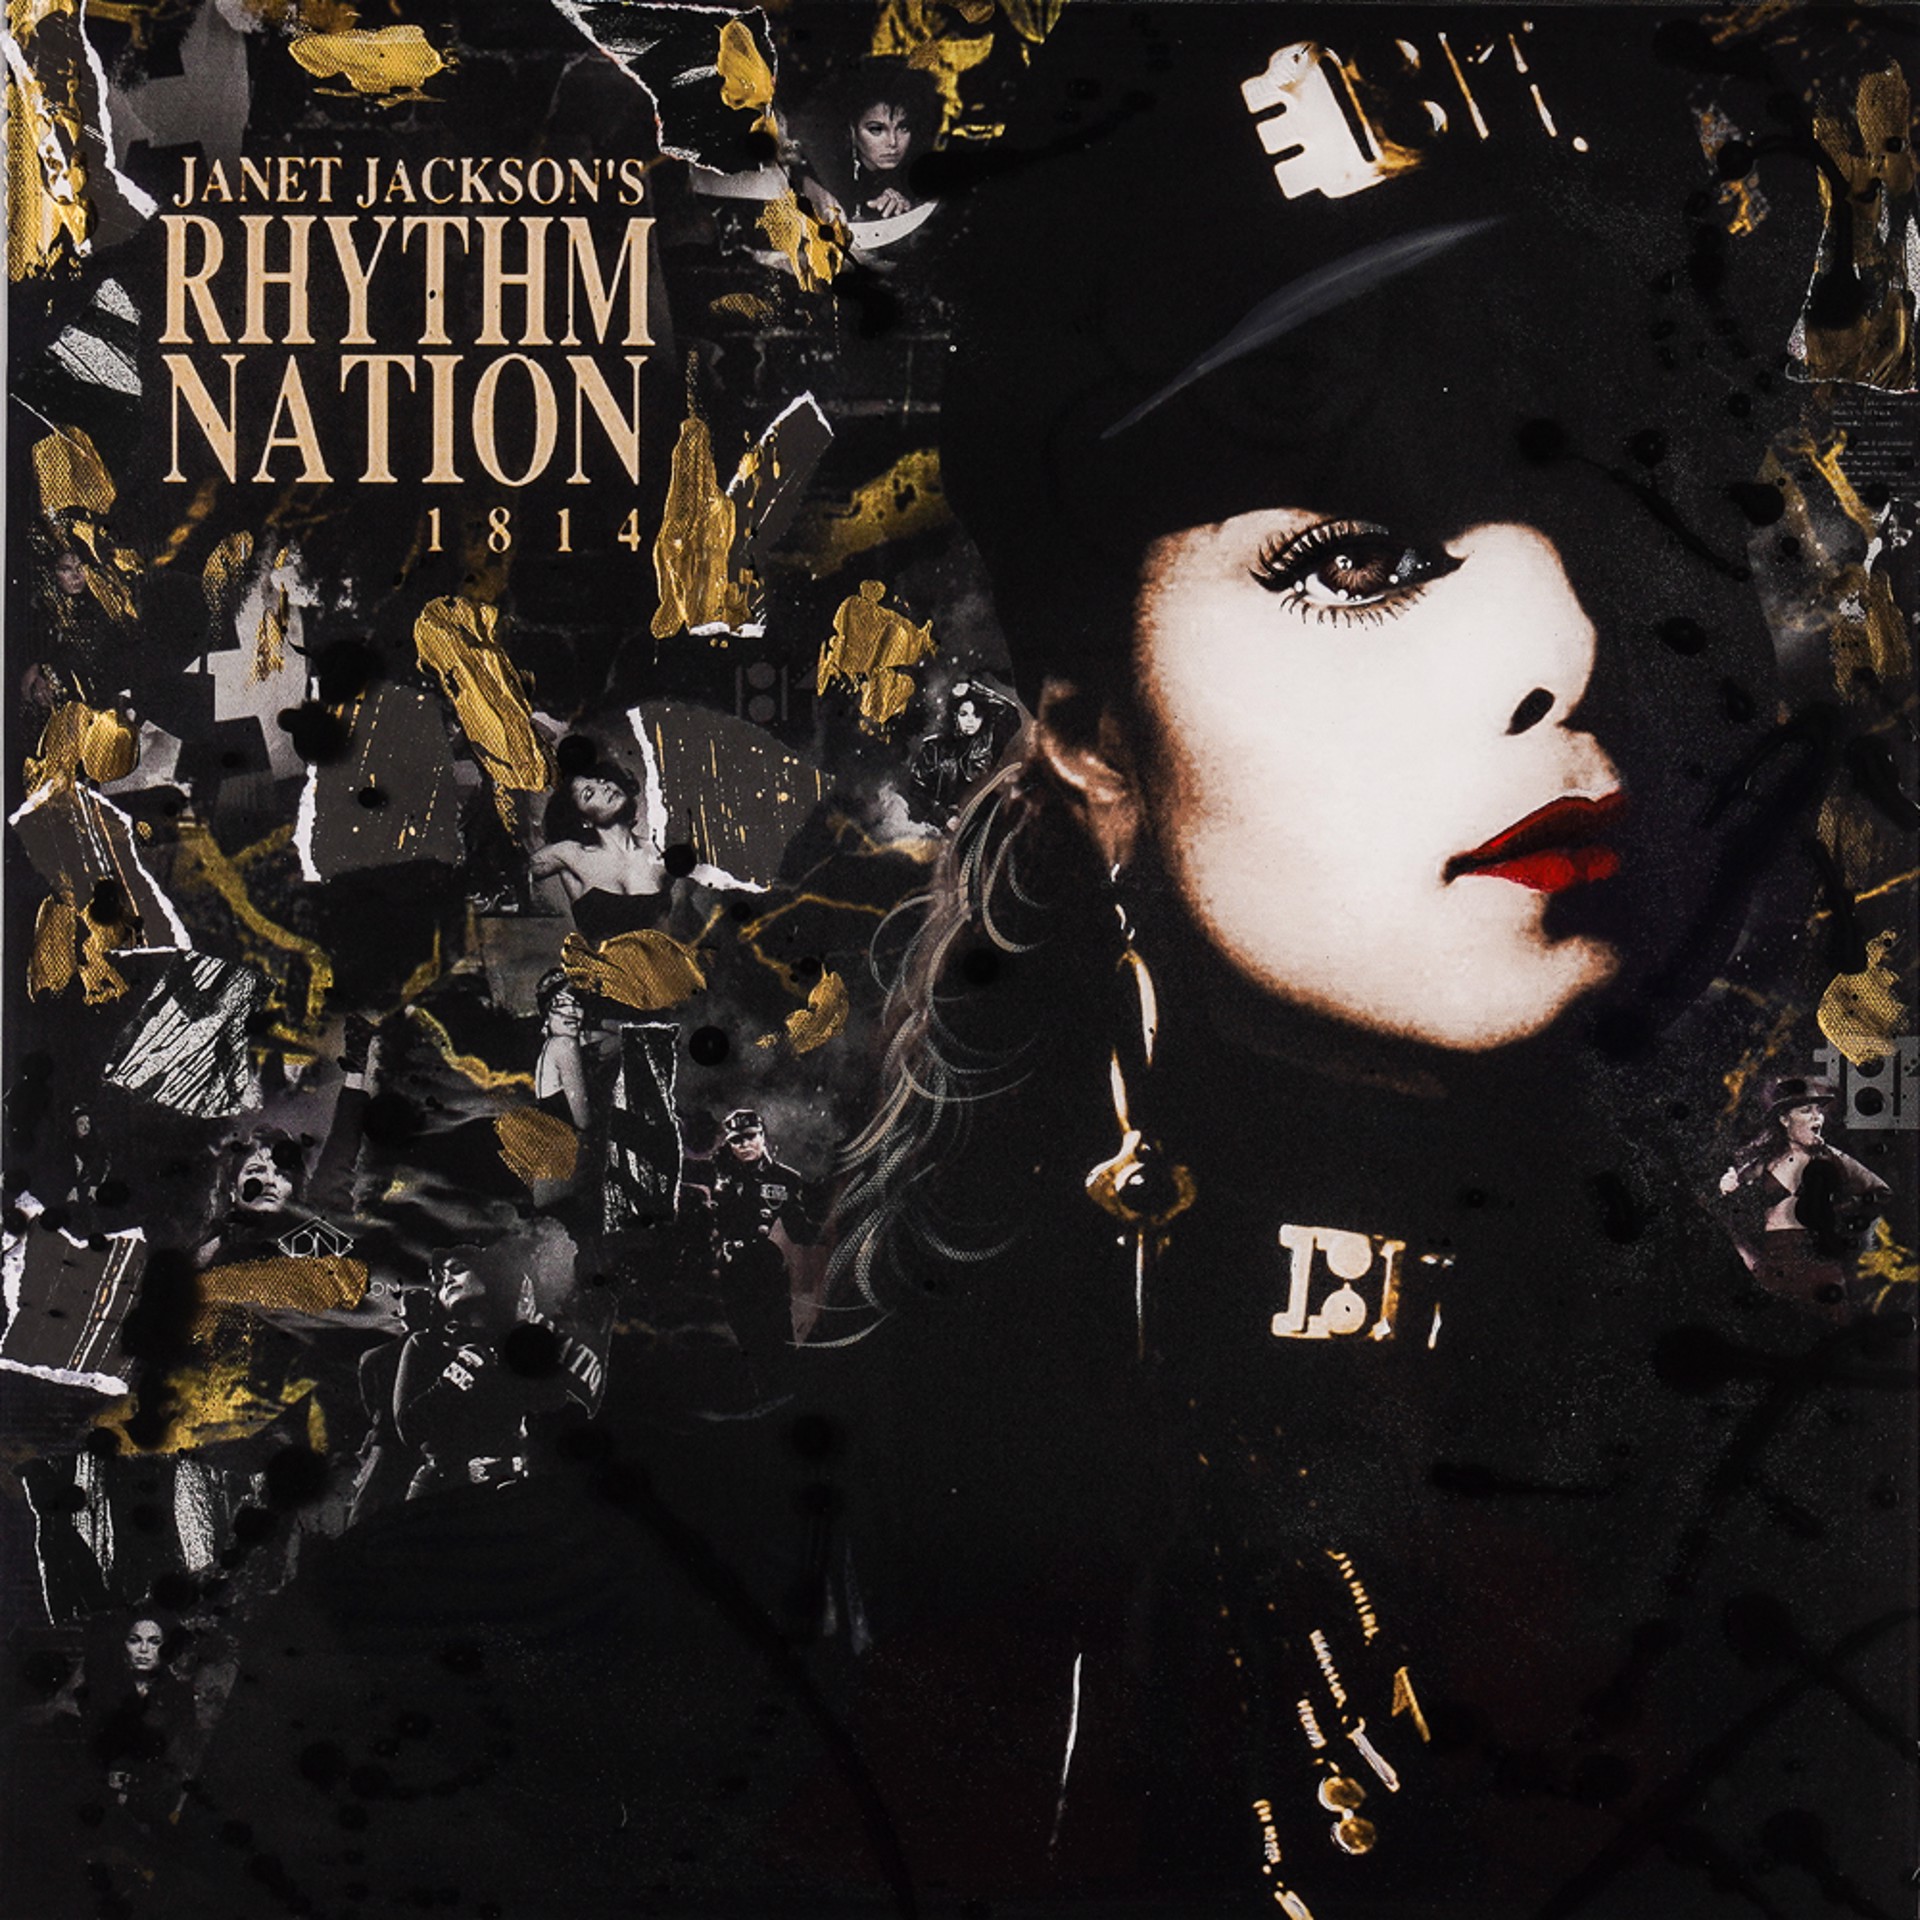 Janet Jackson "Rhythm Nation" by De Von